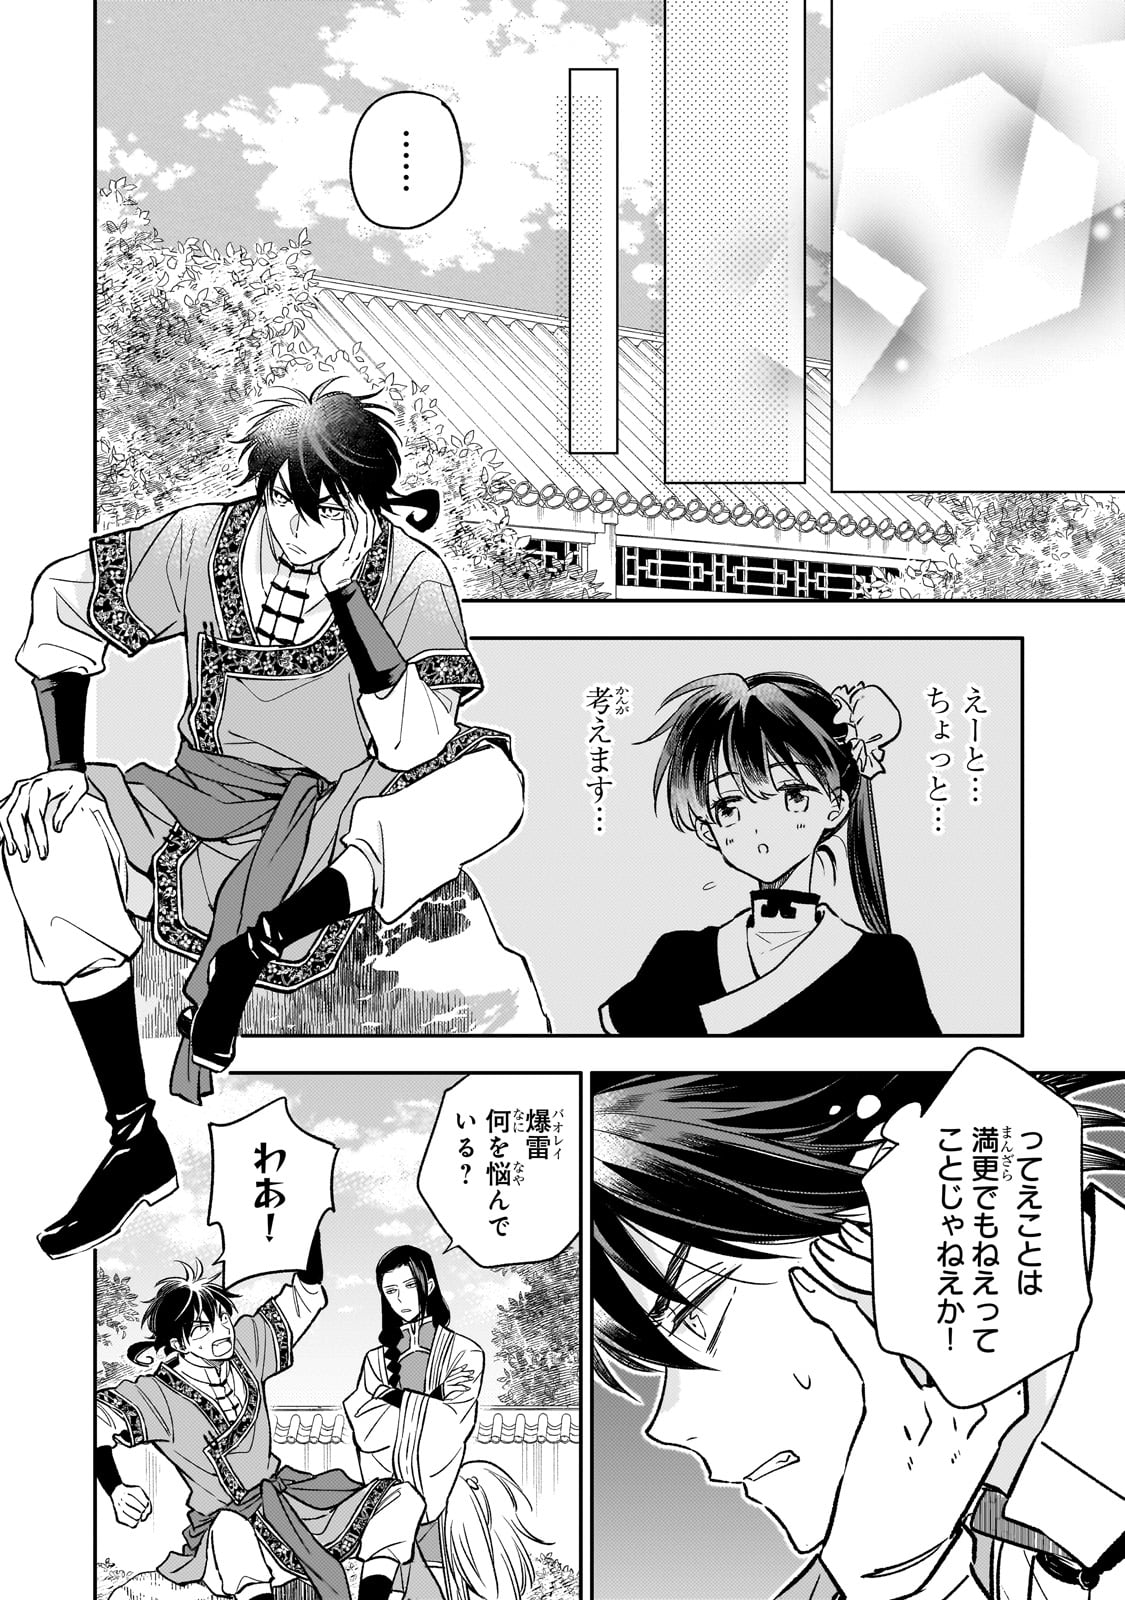 Koukyu no Zatsuyouki - Chapter 27 - Page 16